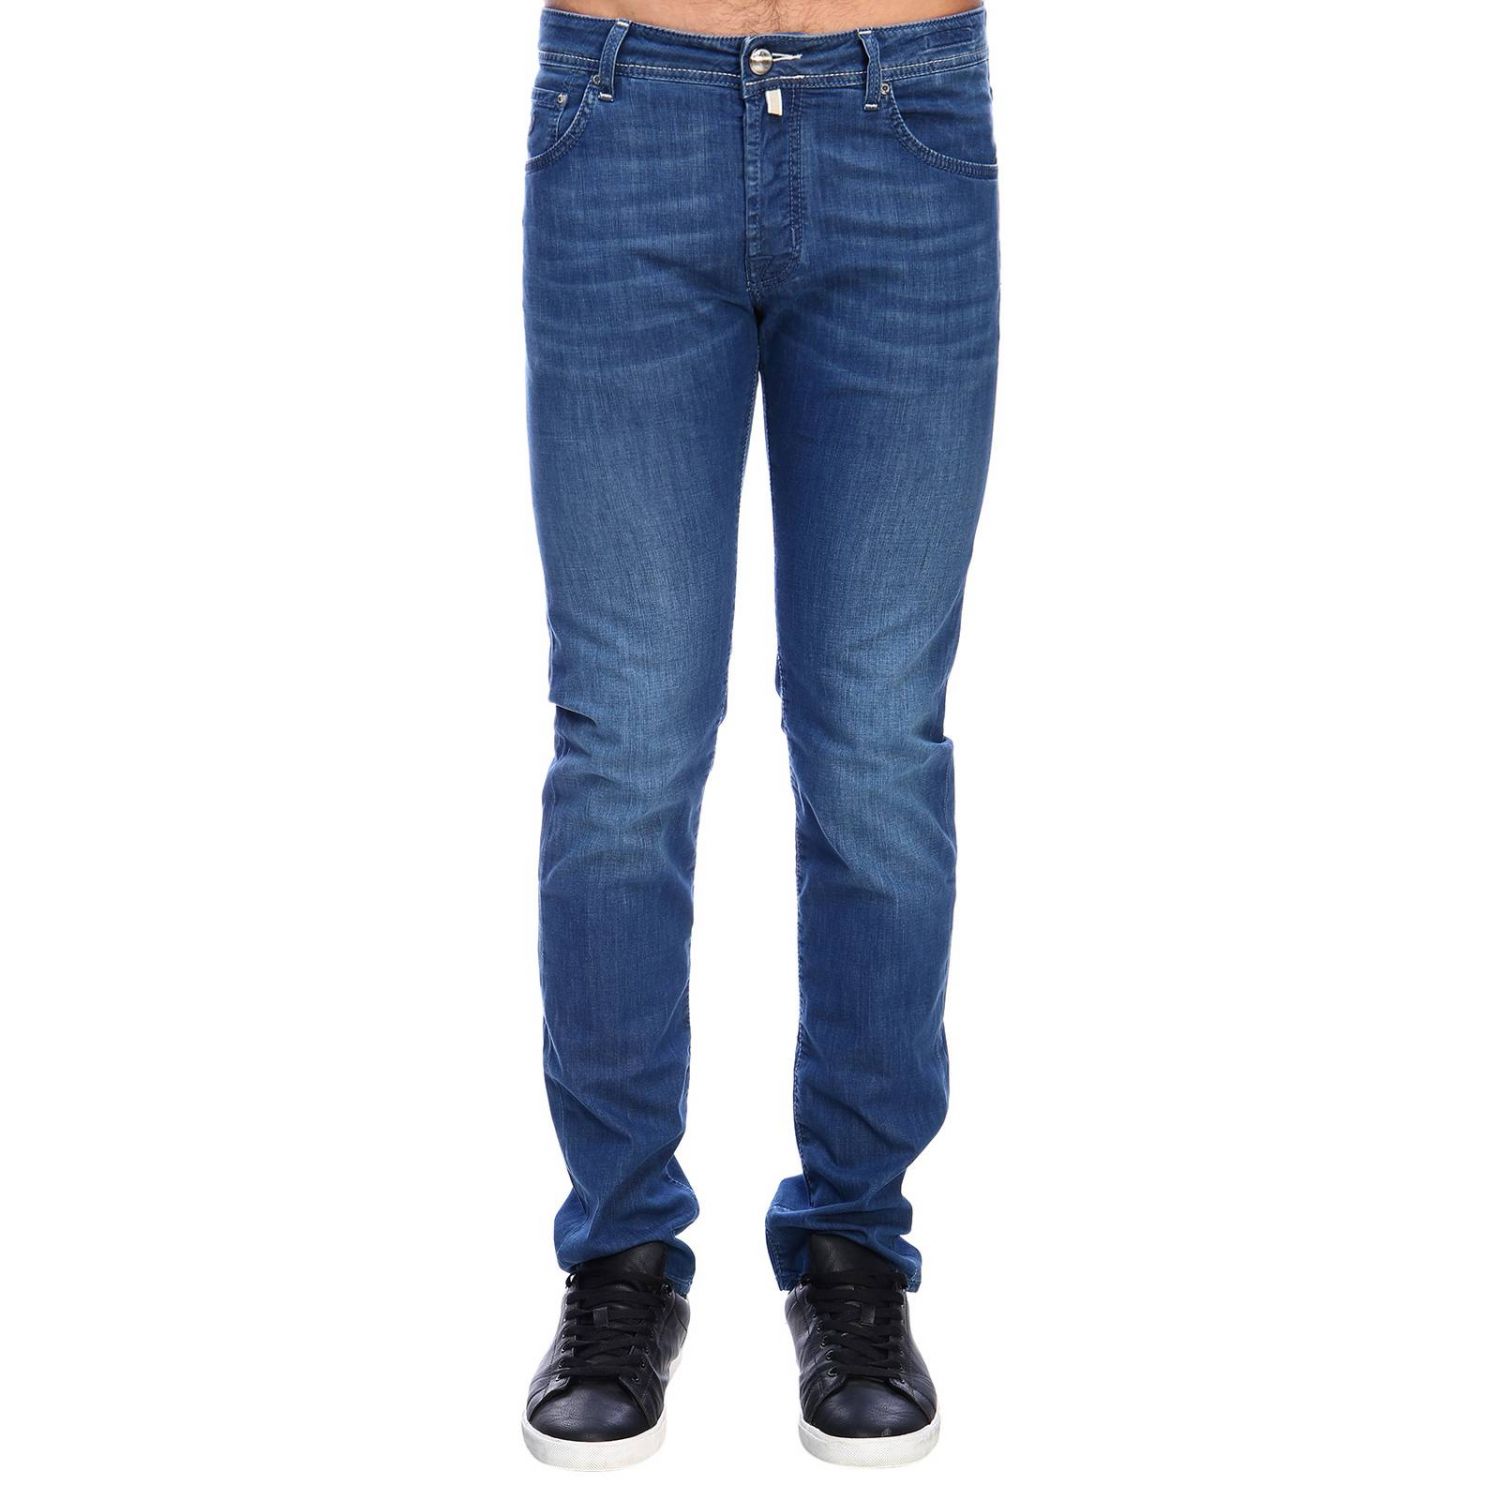 Jacob Cohen Outlet: jeans for man - Denim | Jacob Cohen jeans J622 COMF ...